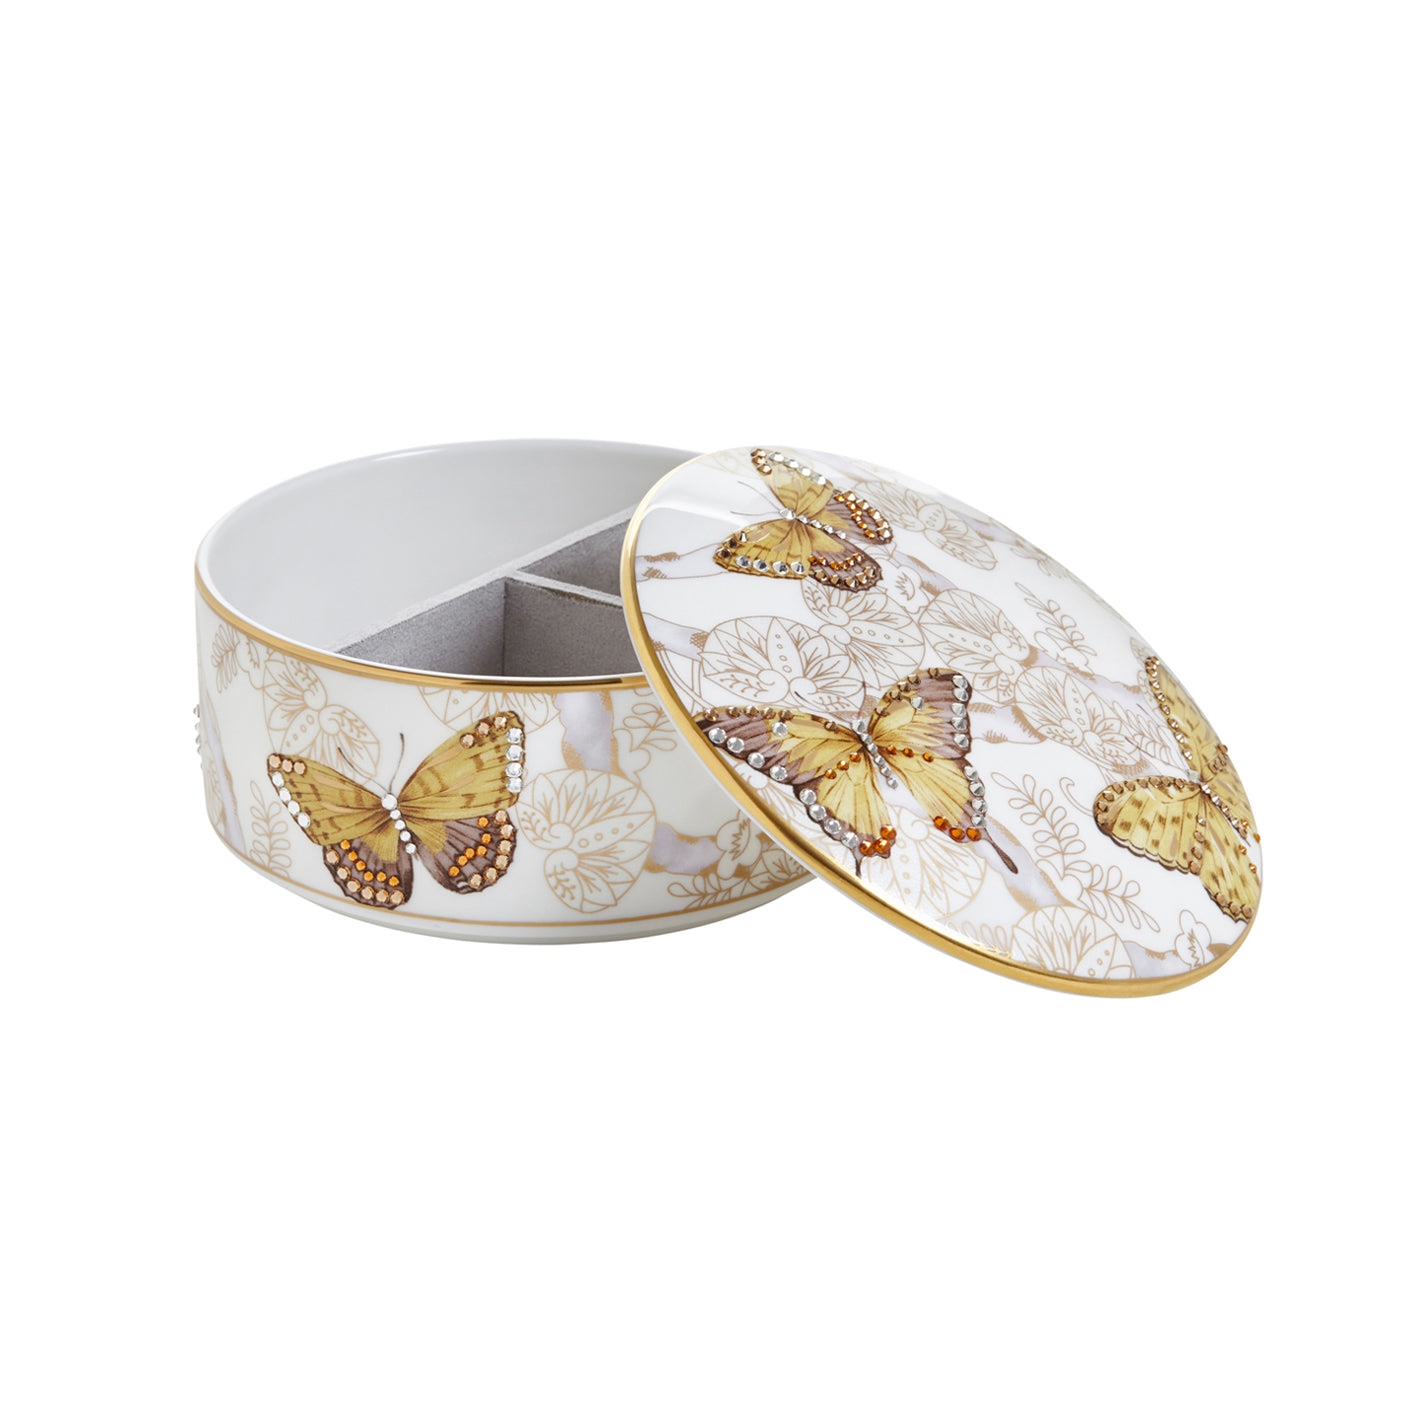 Prouna Butterfly Jeweled Jewelry Box Open White Background Photo